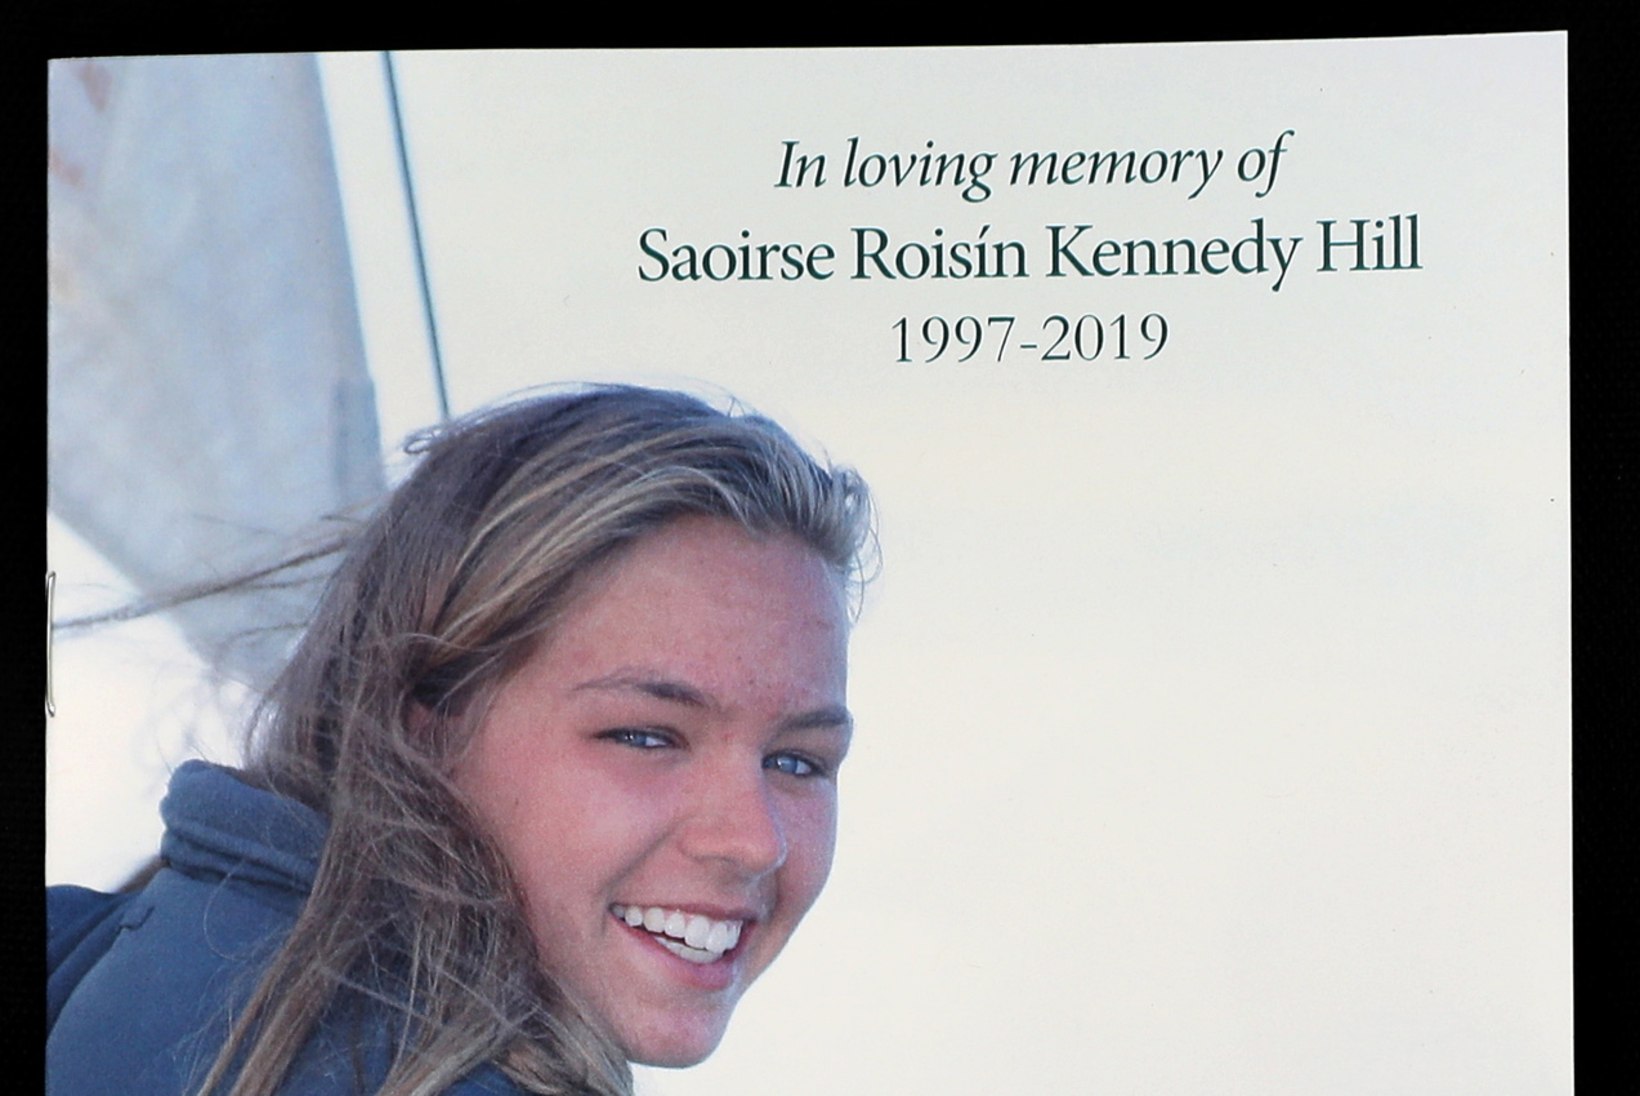 22aastane Saoirse Kennedy soovis enne surma kõige enam end armastama õppida